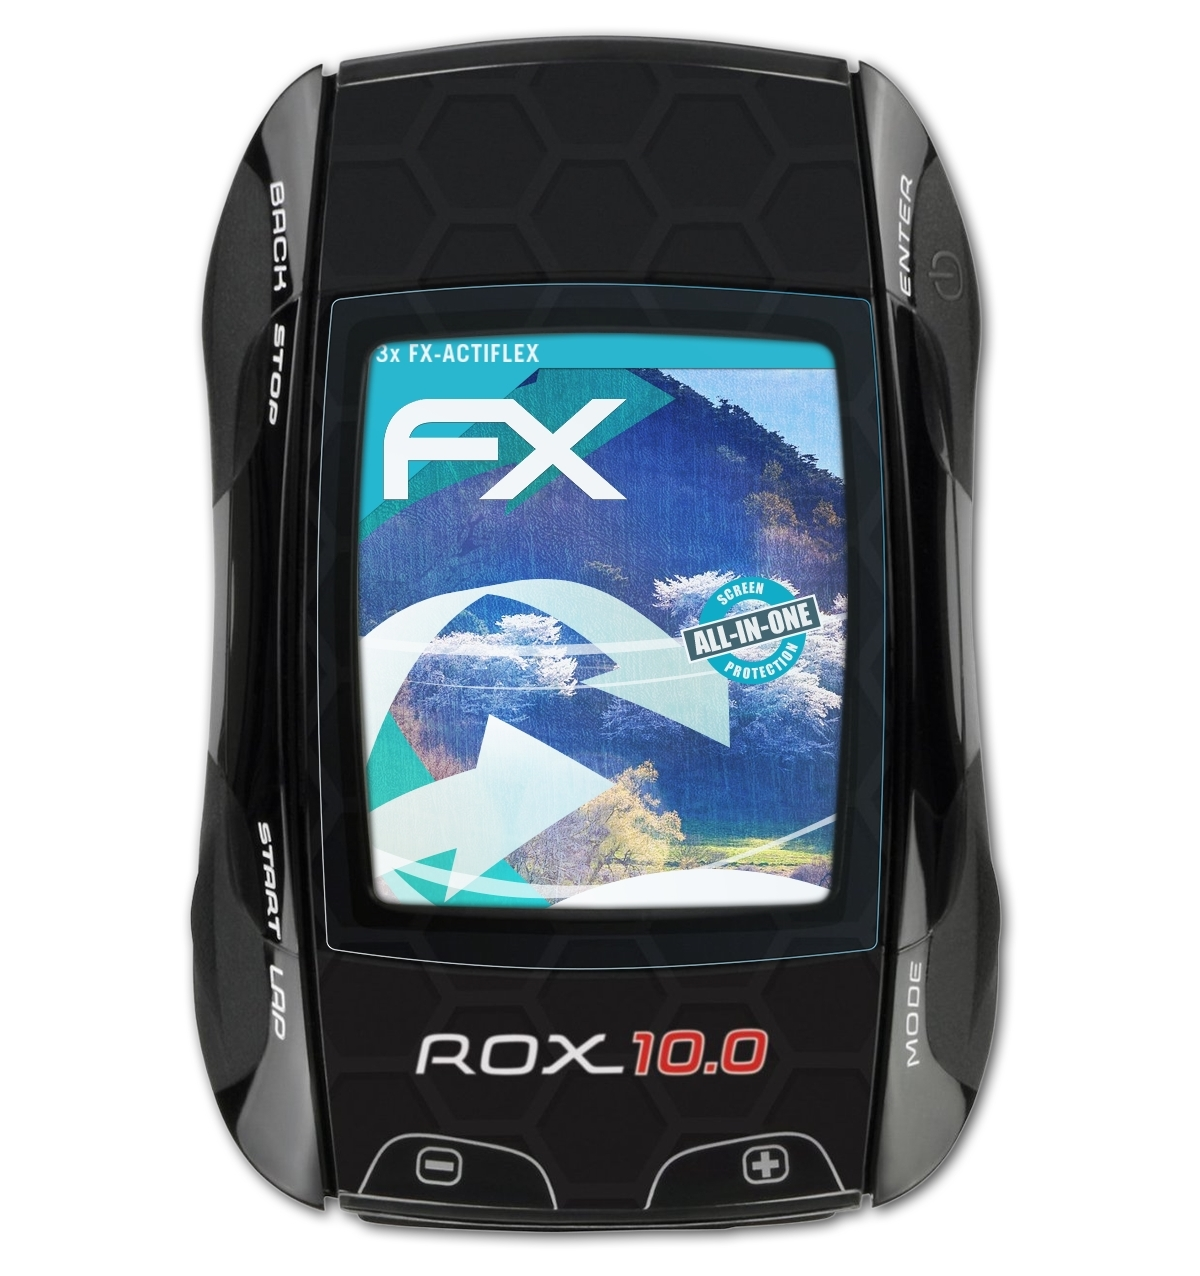 Rox FX-ActiFleX 3x Displayschutz(für ATFOLIX 10.0 GPS) Sigma